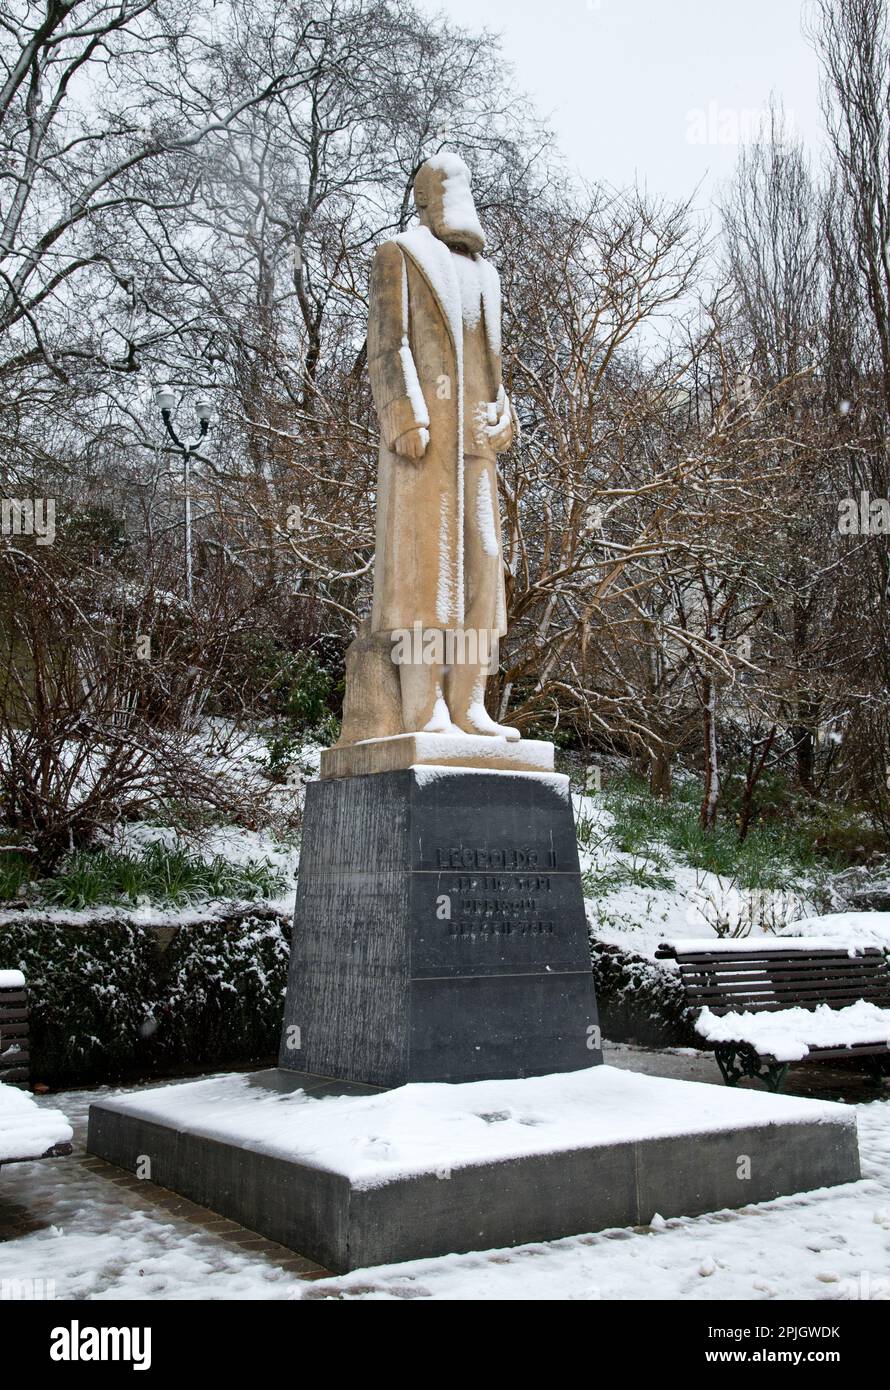 Una estatua cubierta de nieve del controvertido monarca Leopoldo II en el Jardín du Roi, Bruselas, Bélgica. Foto de stock